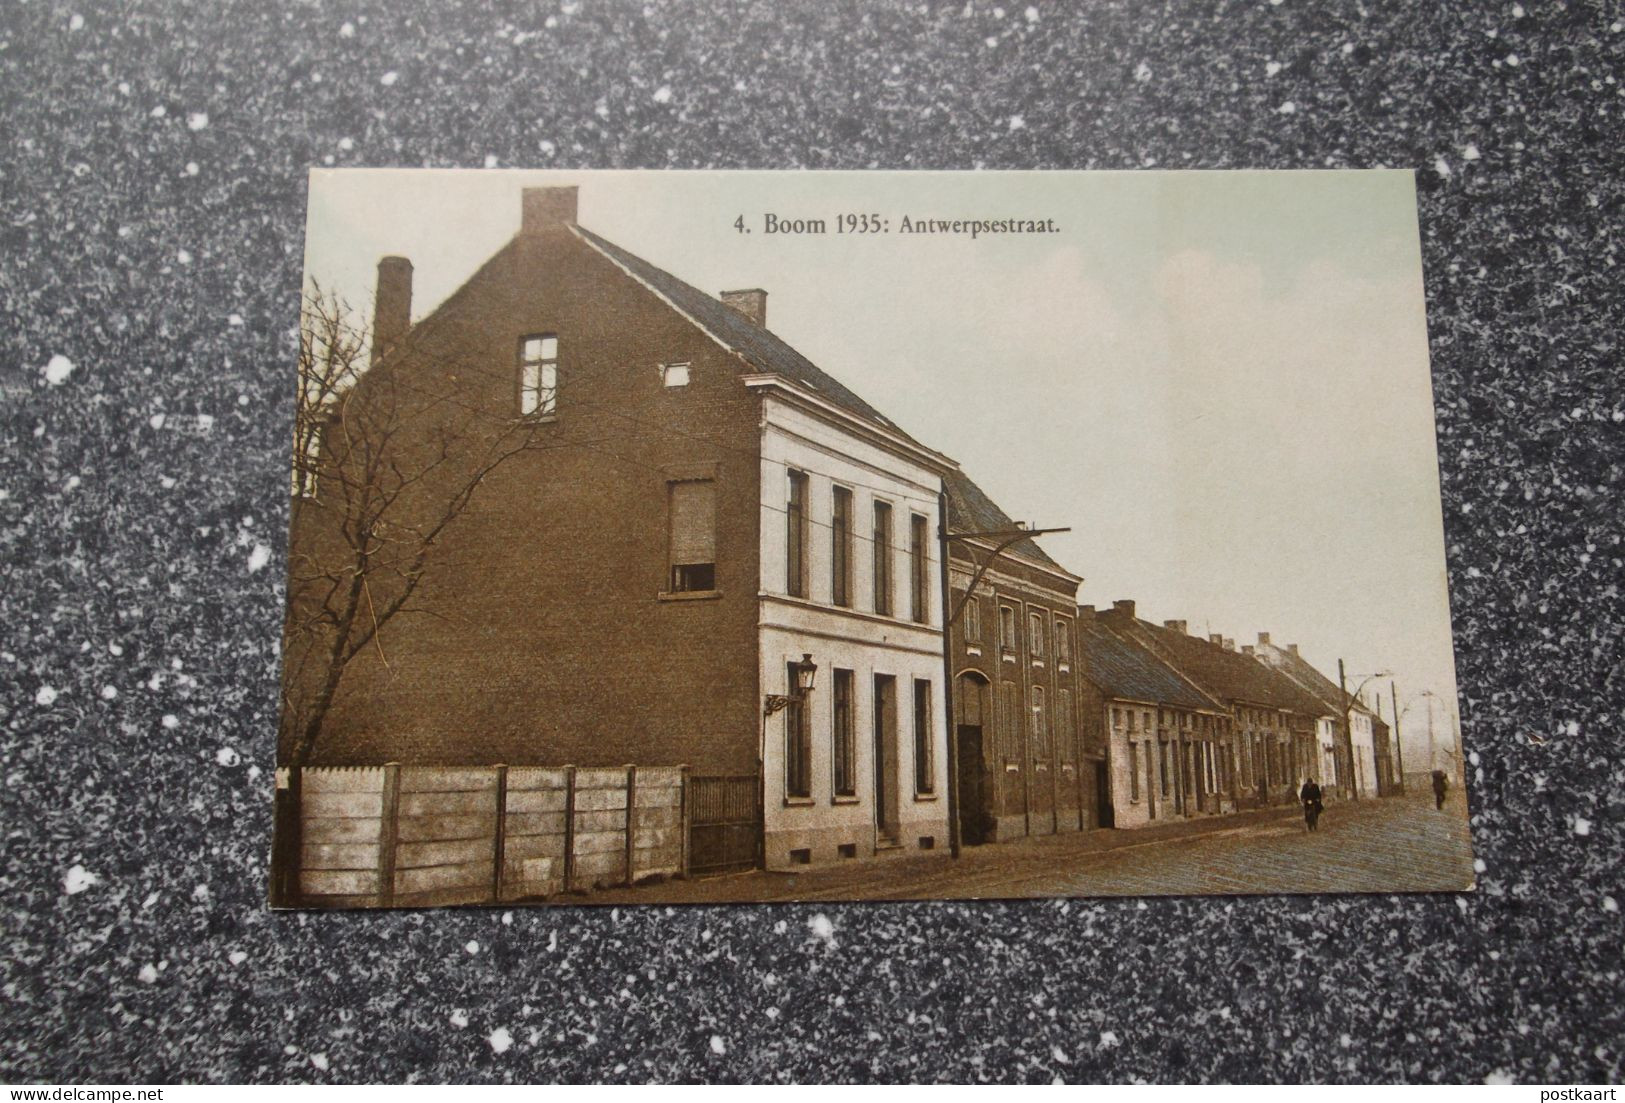 BOOM: 1935 - Antwerpsestraat - Boom